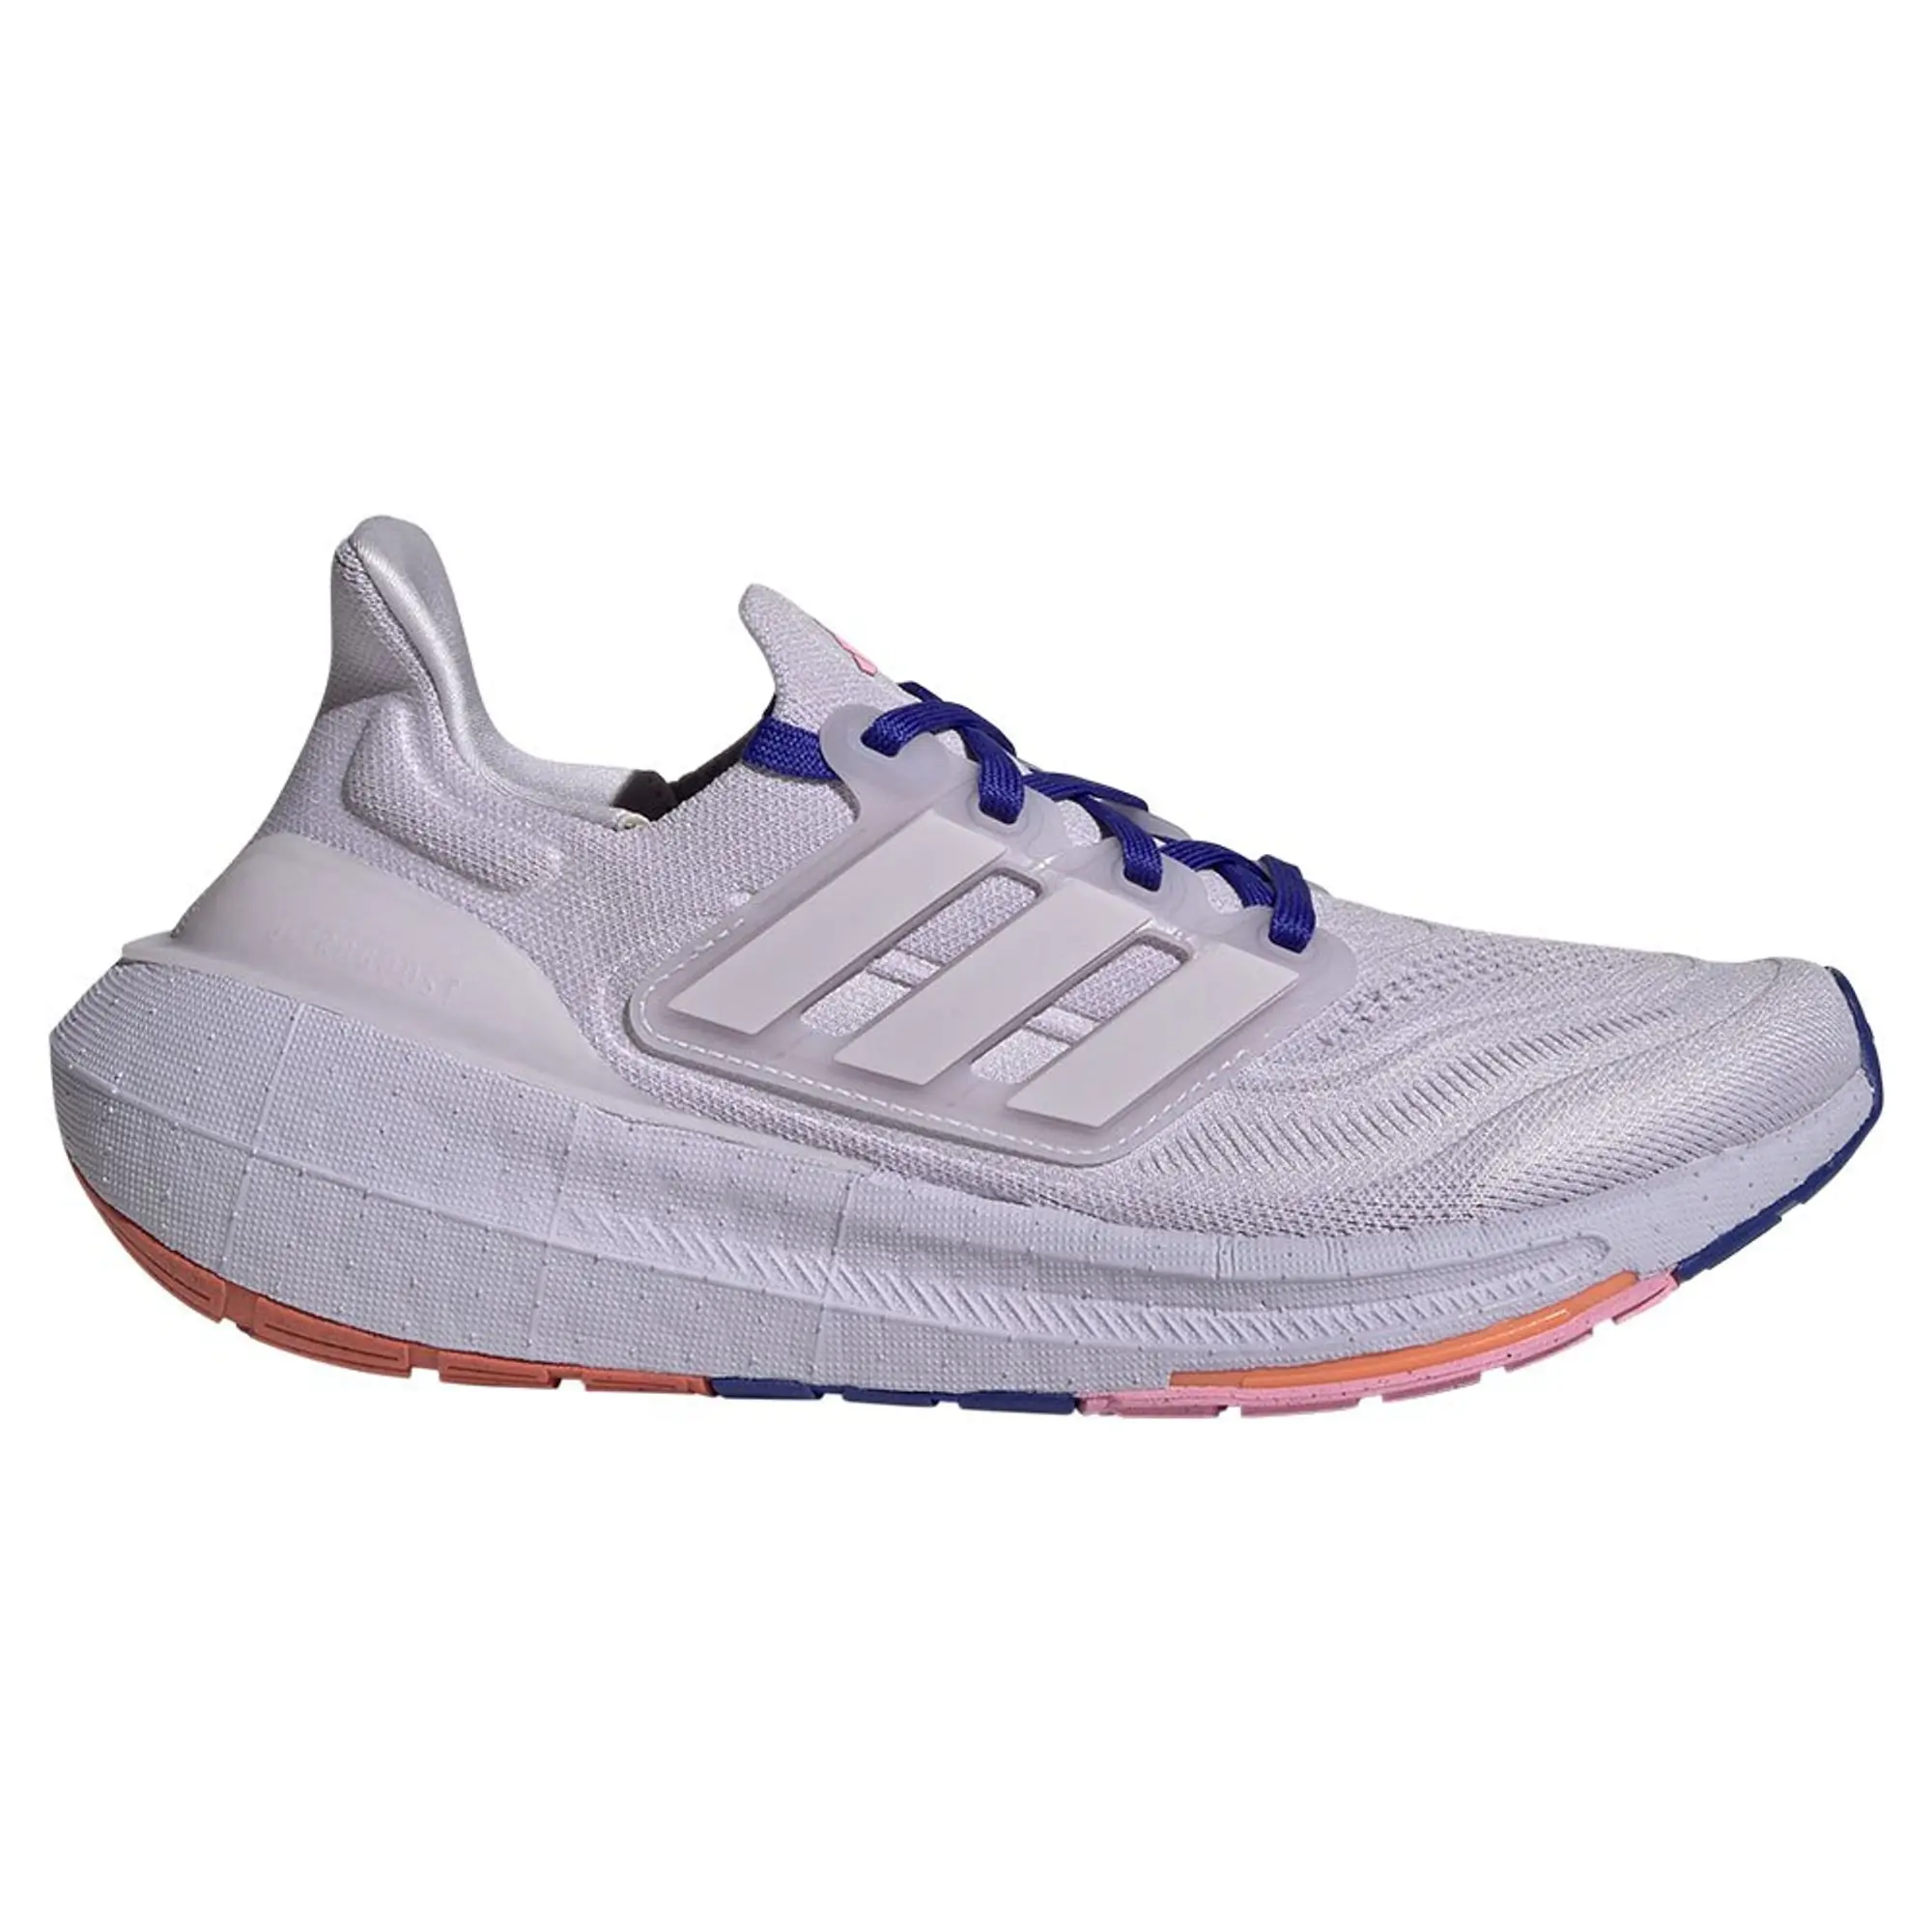 Adidas Ultraboost Light Running Shoes  EU 38 2/3 Woman -